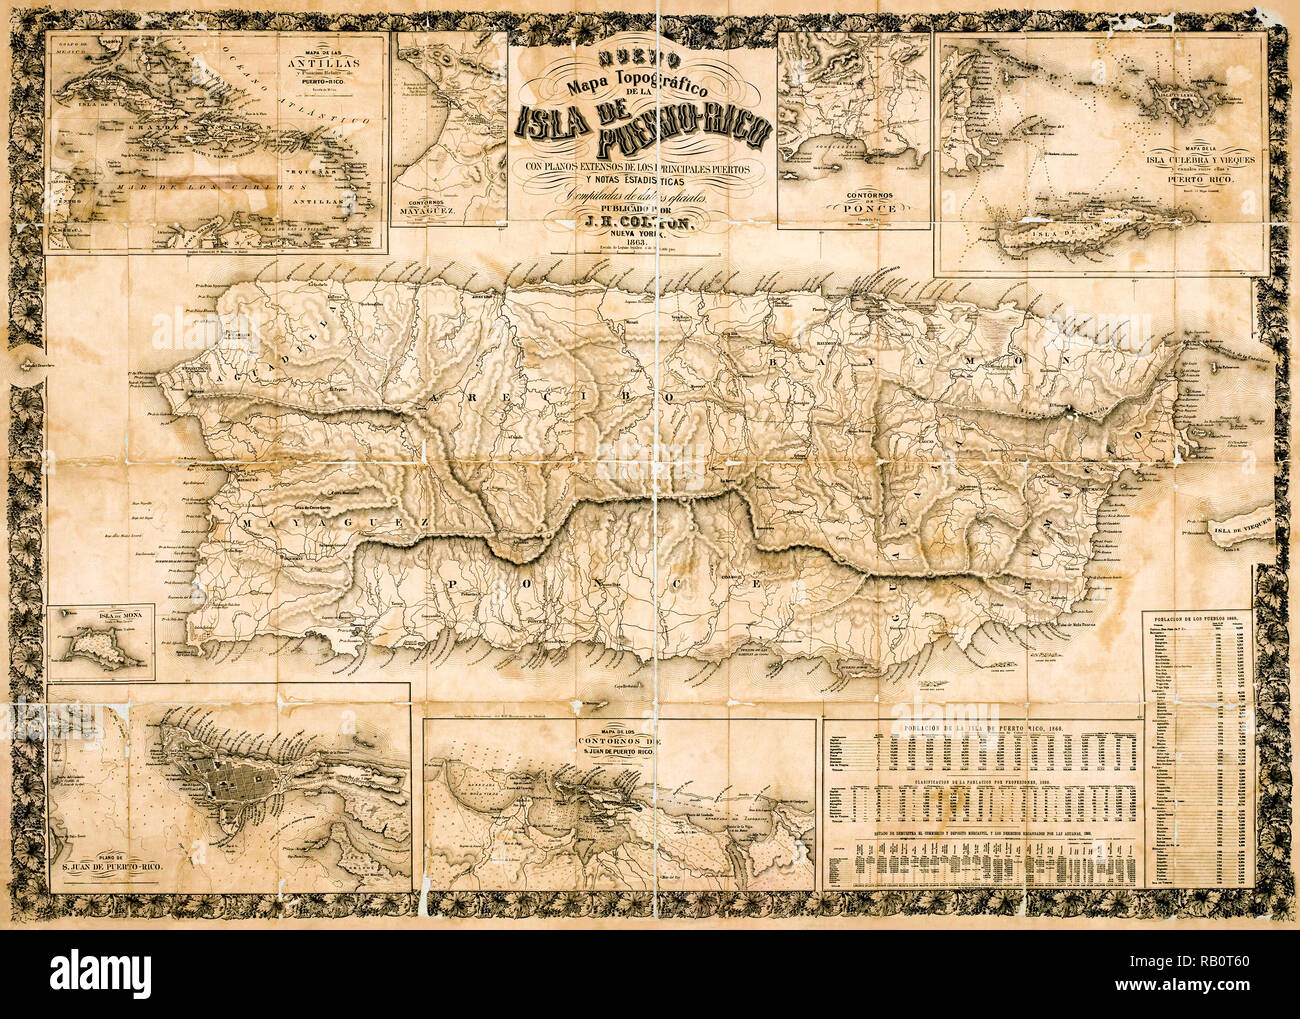 Antike topographische Karte von Puerto Rico 1863 Während unter spanischer Herrschaft. Stockfoto